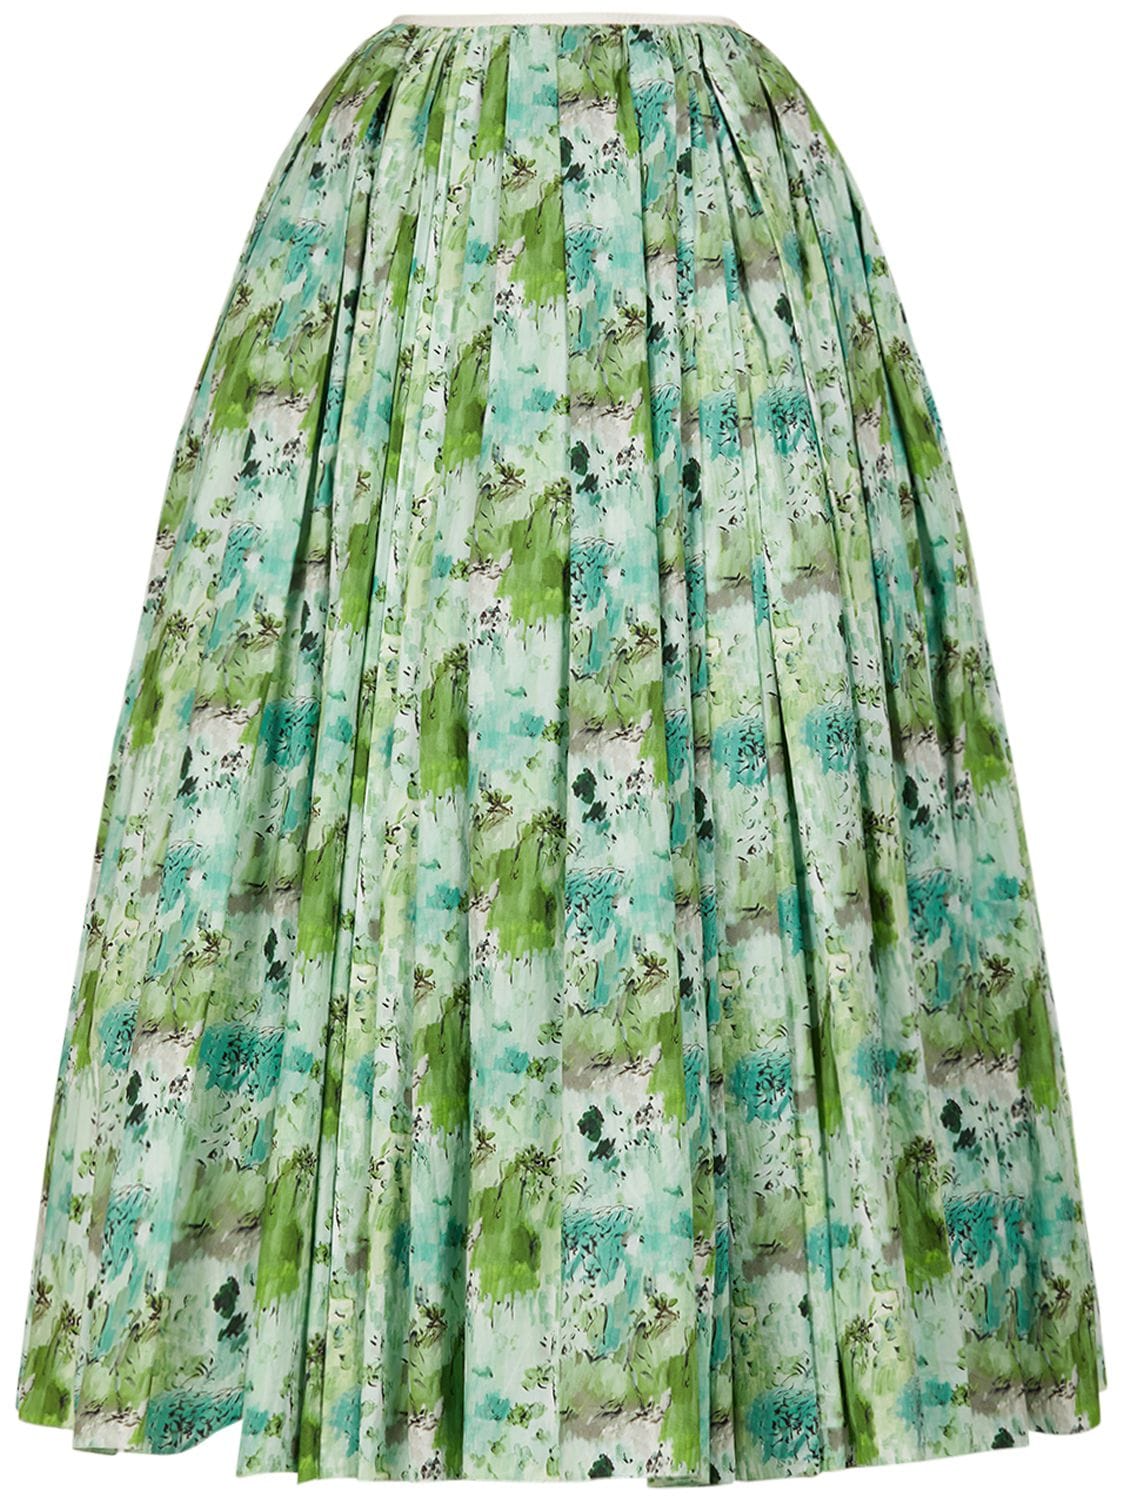 GIAMBATTISTA VALLI Printed Cotton Poplin Maxi Skirt